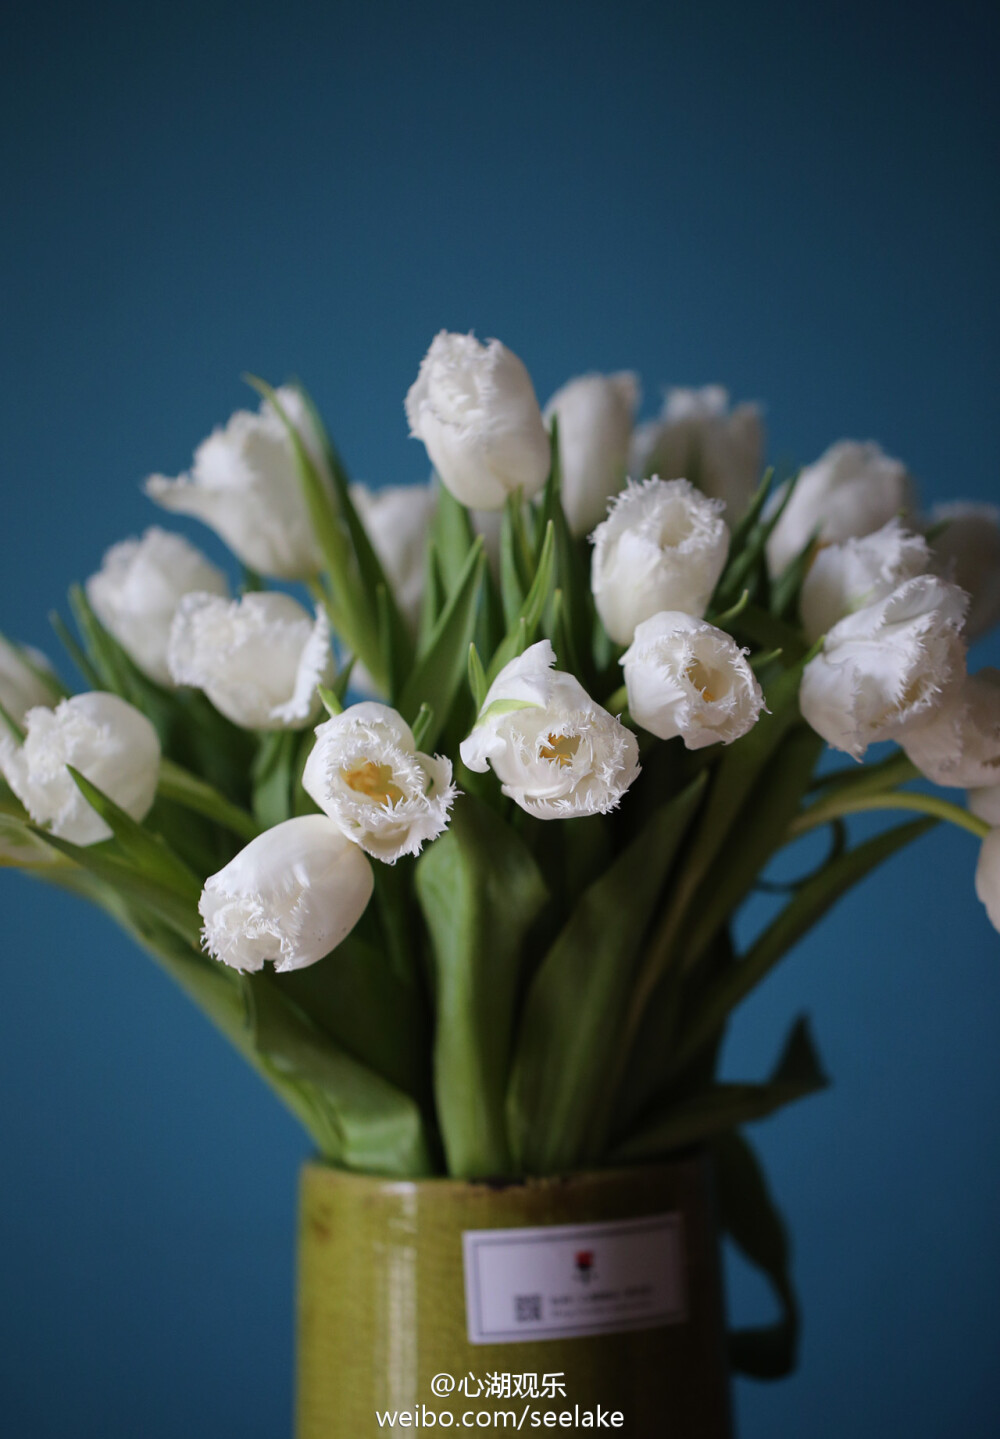 Tulip Honeymoon-流苏郁金香之蜜月。奶白色的花朵带着精致的细流苏边，就像圣代上厚厚的一层糖霜。嫩黄色的花蕊静谧的隐藏在深沉，就好似奶油里裹着的某颗杏仁糖，是埋藏着的惊喜。期待你的品尝。